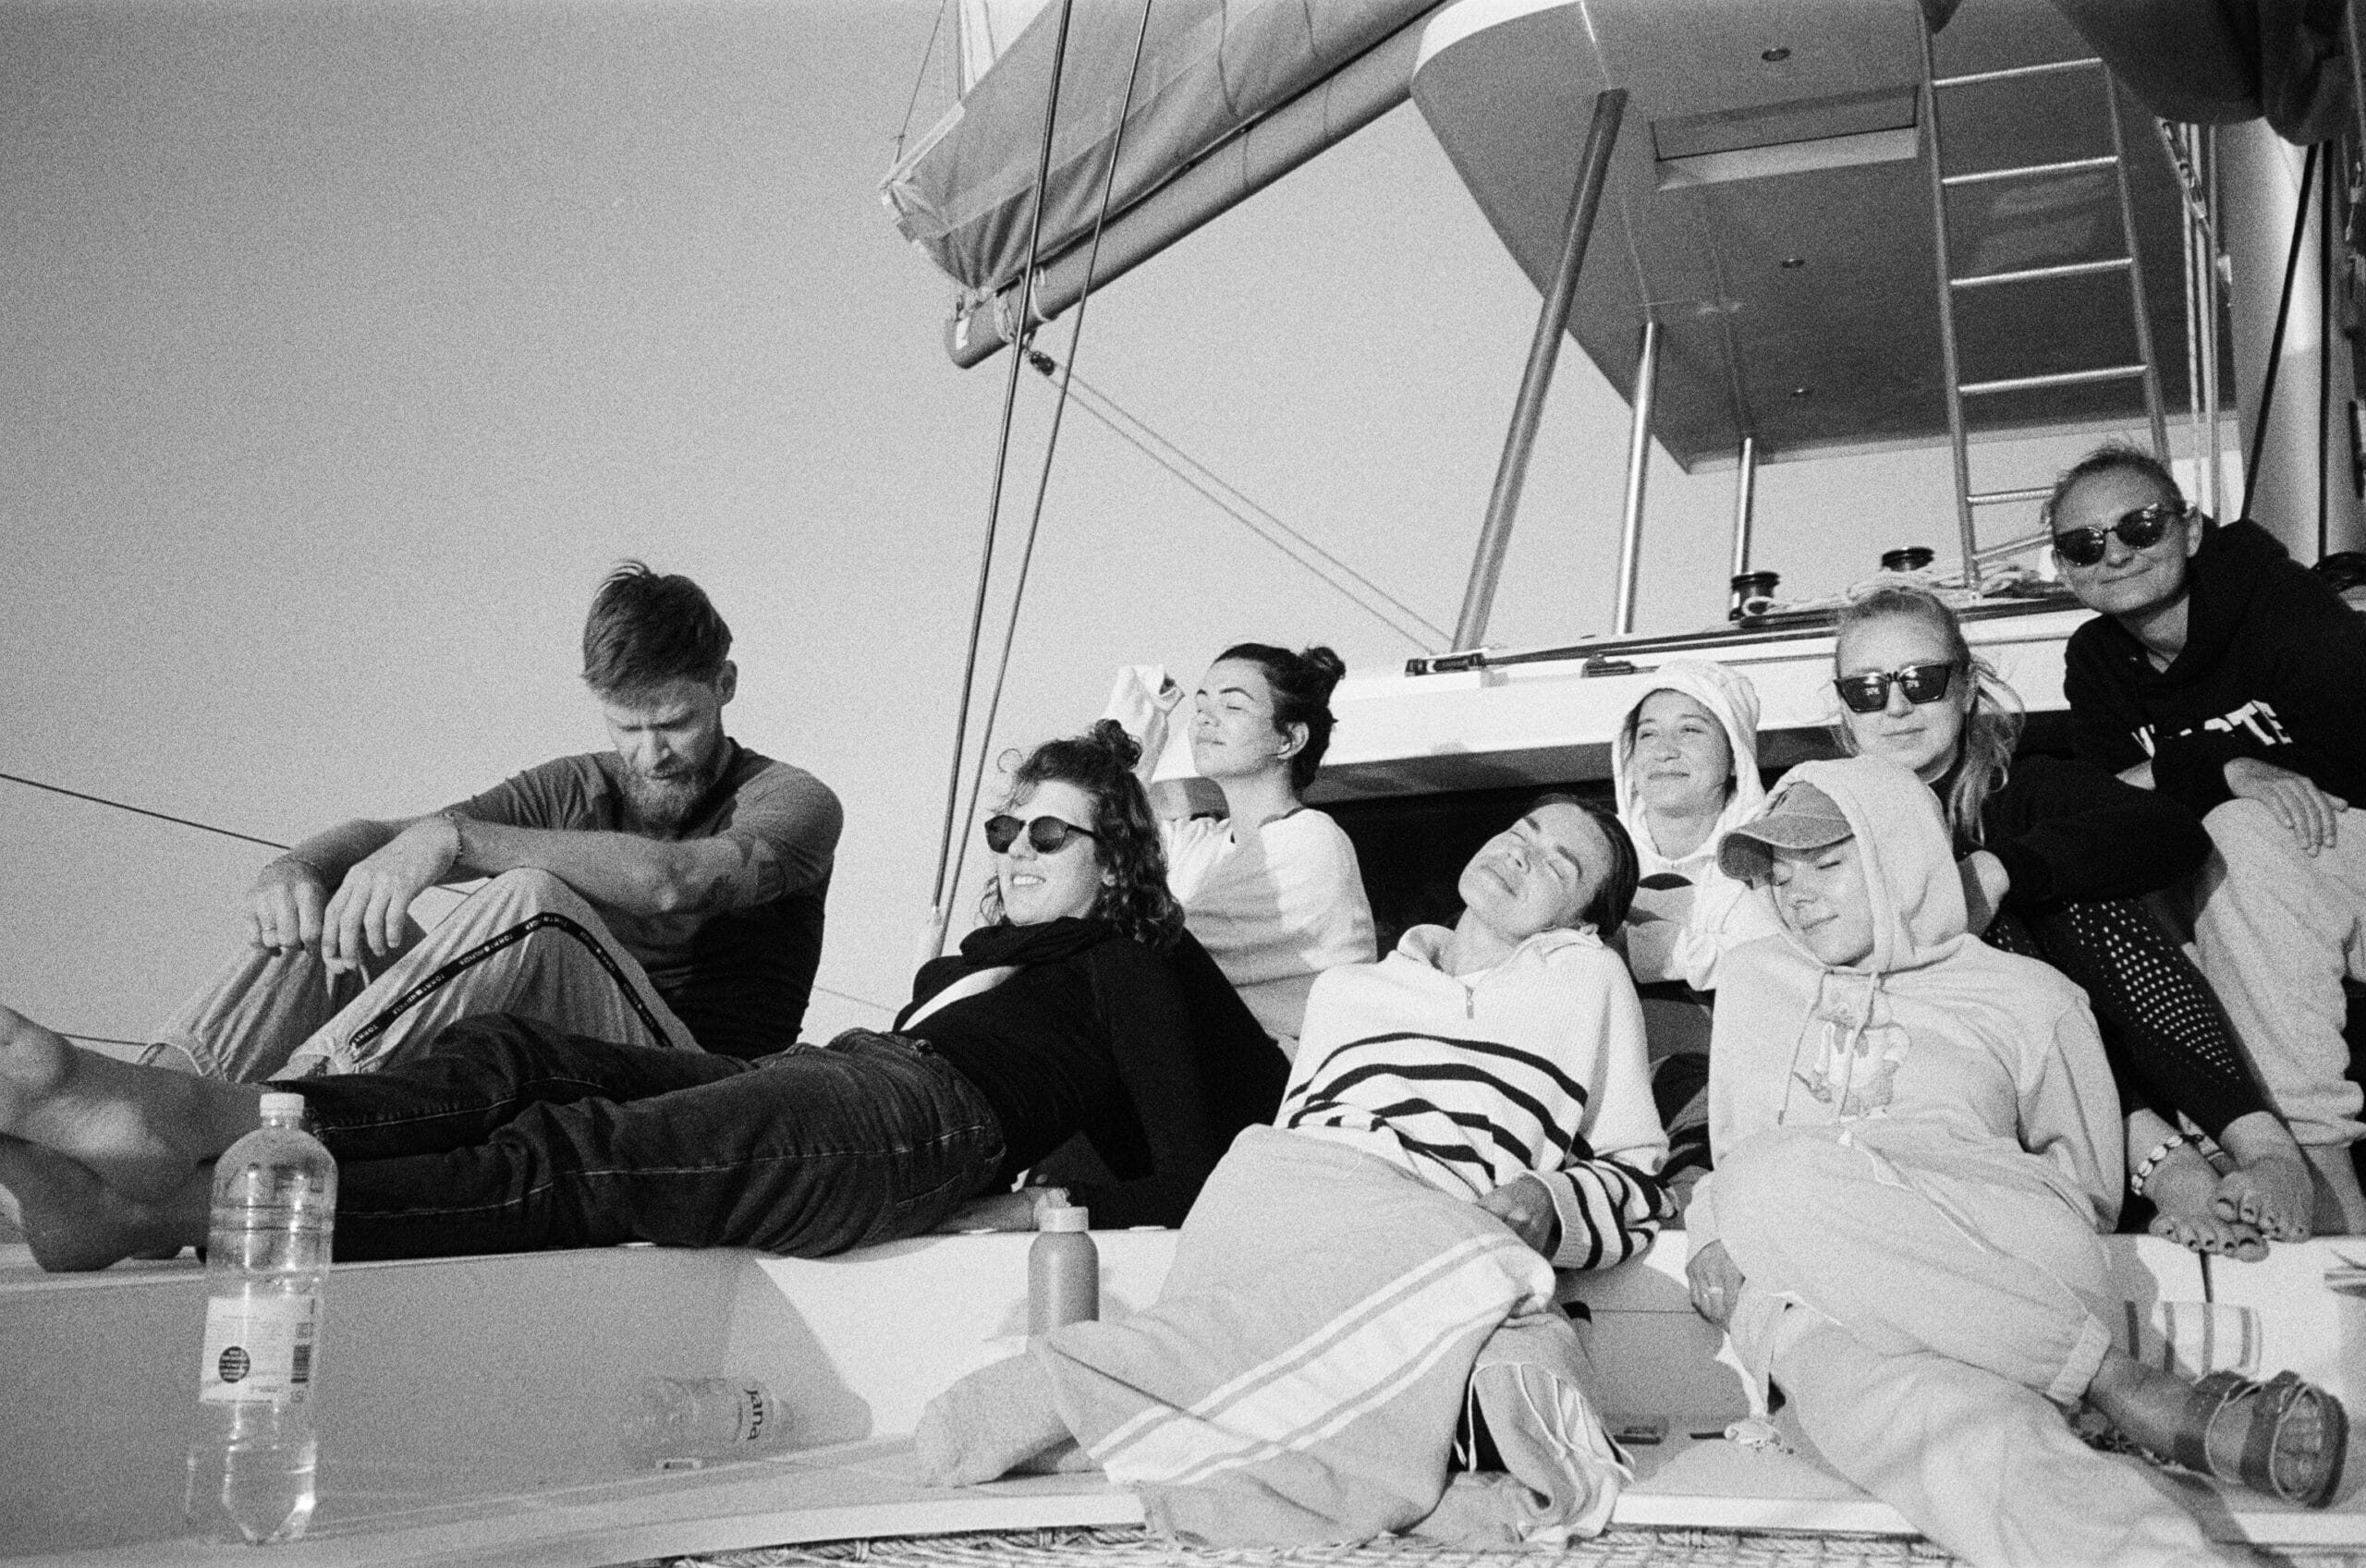 Eine Gruppe von sieben Personen entspannt sich und genießt das Leben auf einer Segelyacht. Sie tragen legere Kleidung und Sonnenbrillen und aalen sich unter einem klaren Himmel.